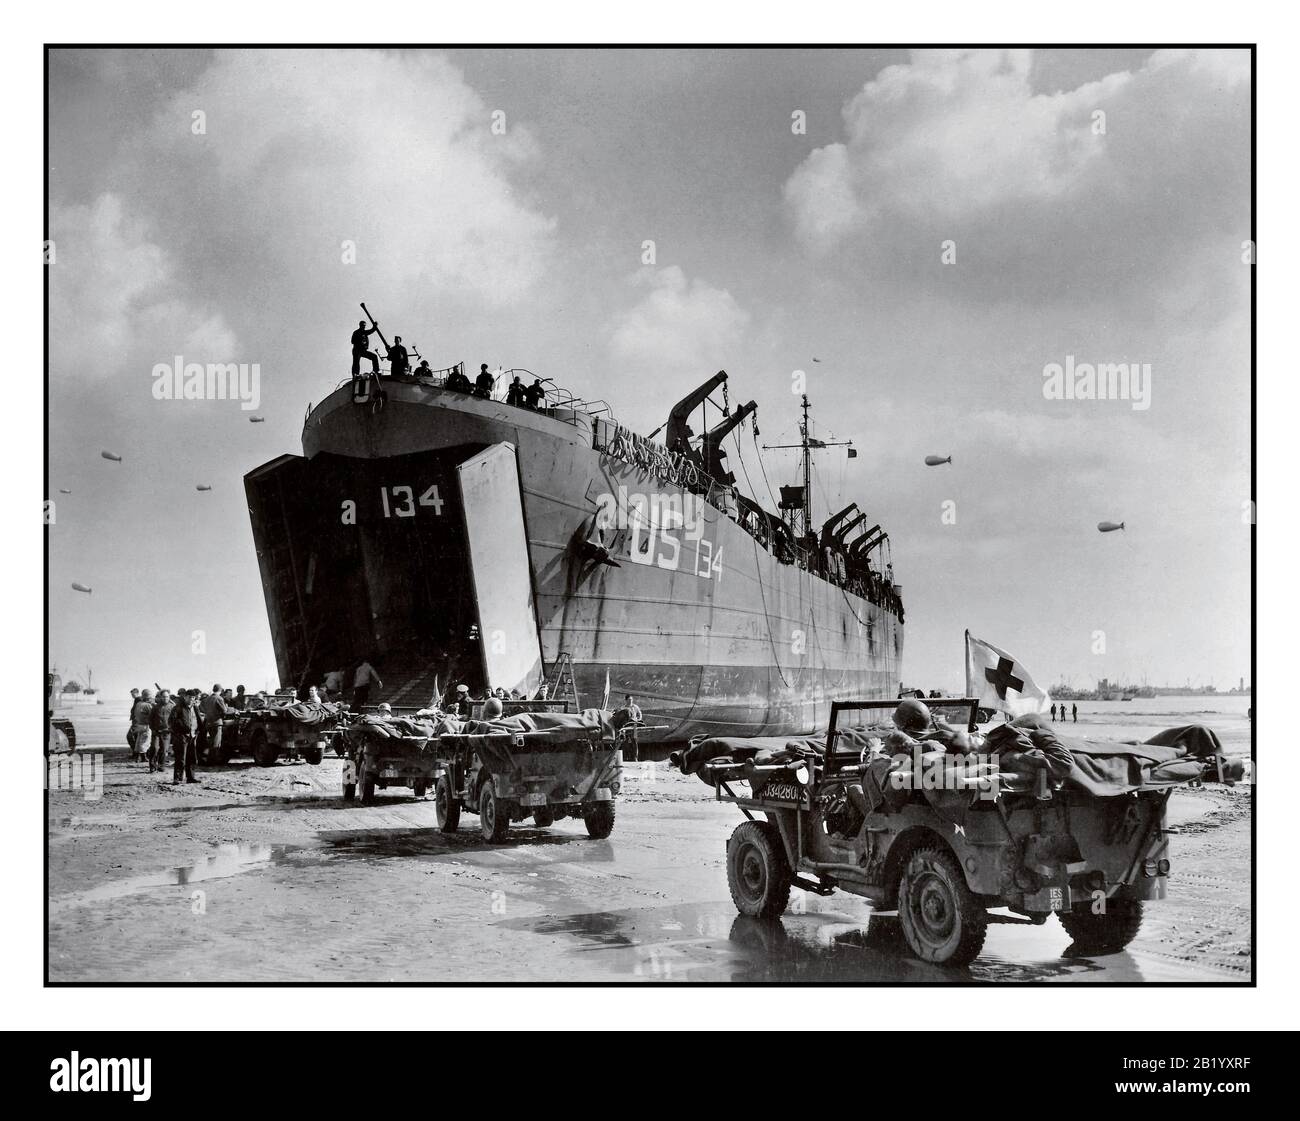 D-Day+6 operación de la Segunda Guerra Mundial Overlord bajas estadounidenses la Marina de los Estados Unidos LST-134 y LST-325 pesaron en Normandía Francia, mientras que los jeeps que conducen a lo largo de la playa de la invasión llevan víctimas a los barcos en espera, 12 de junio de 1944 Segunda Guerra Mundial Foto de stock